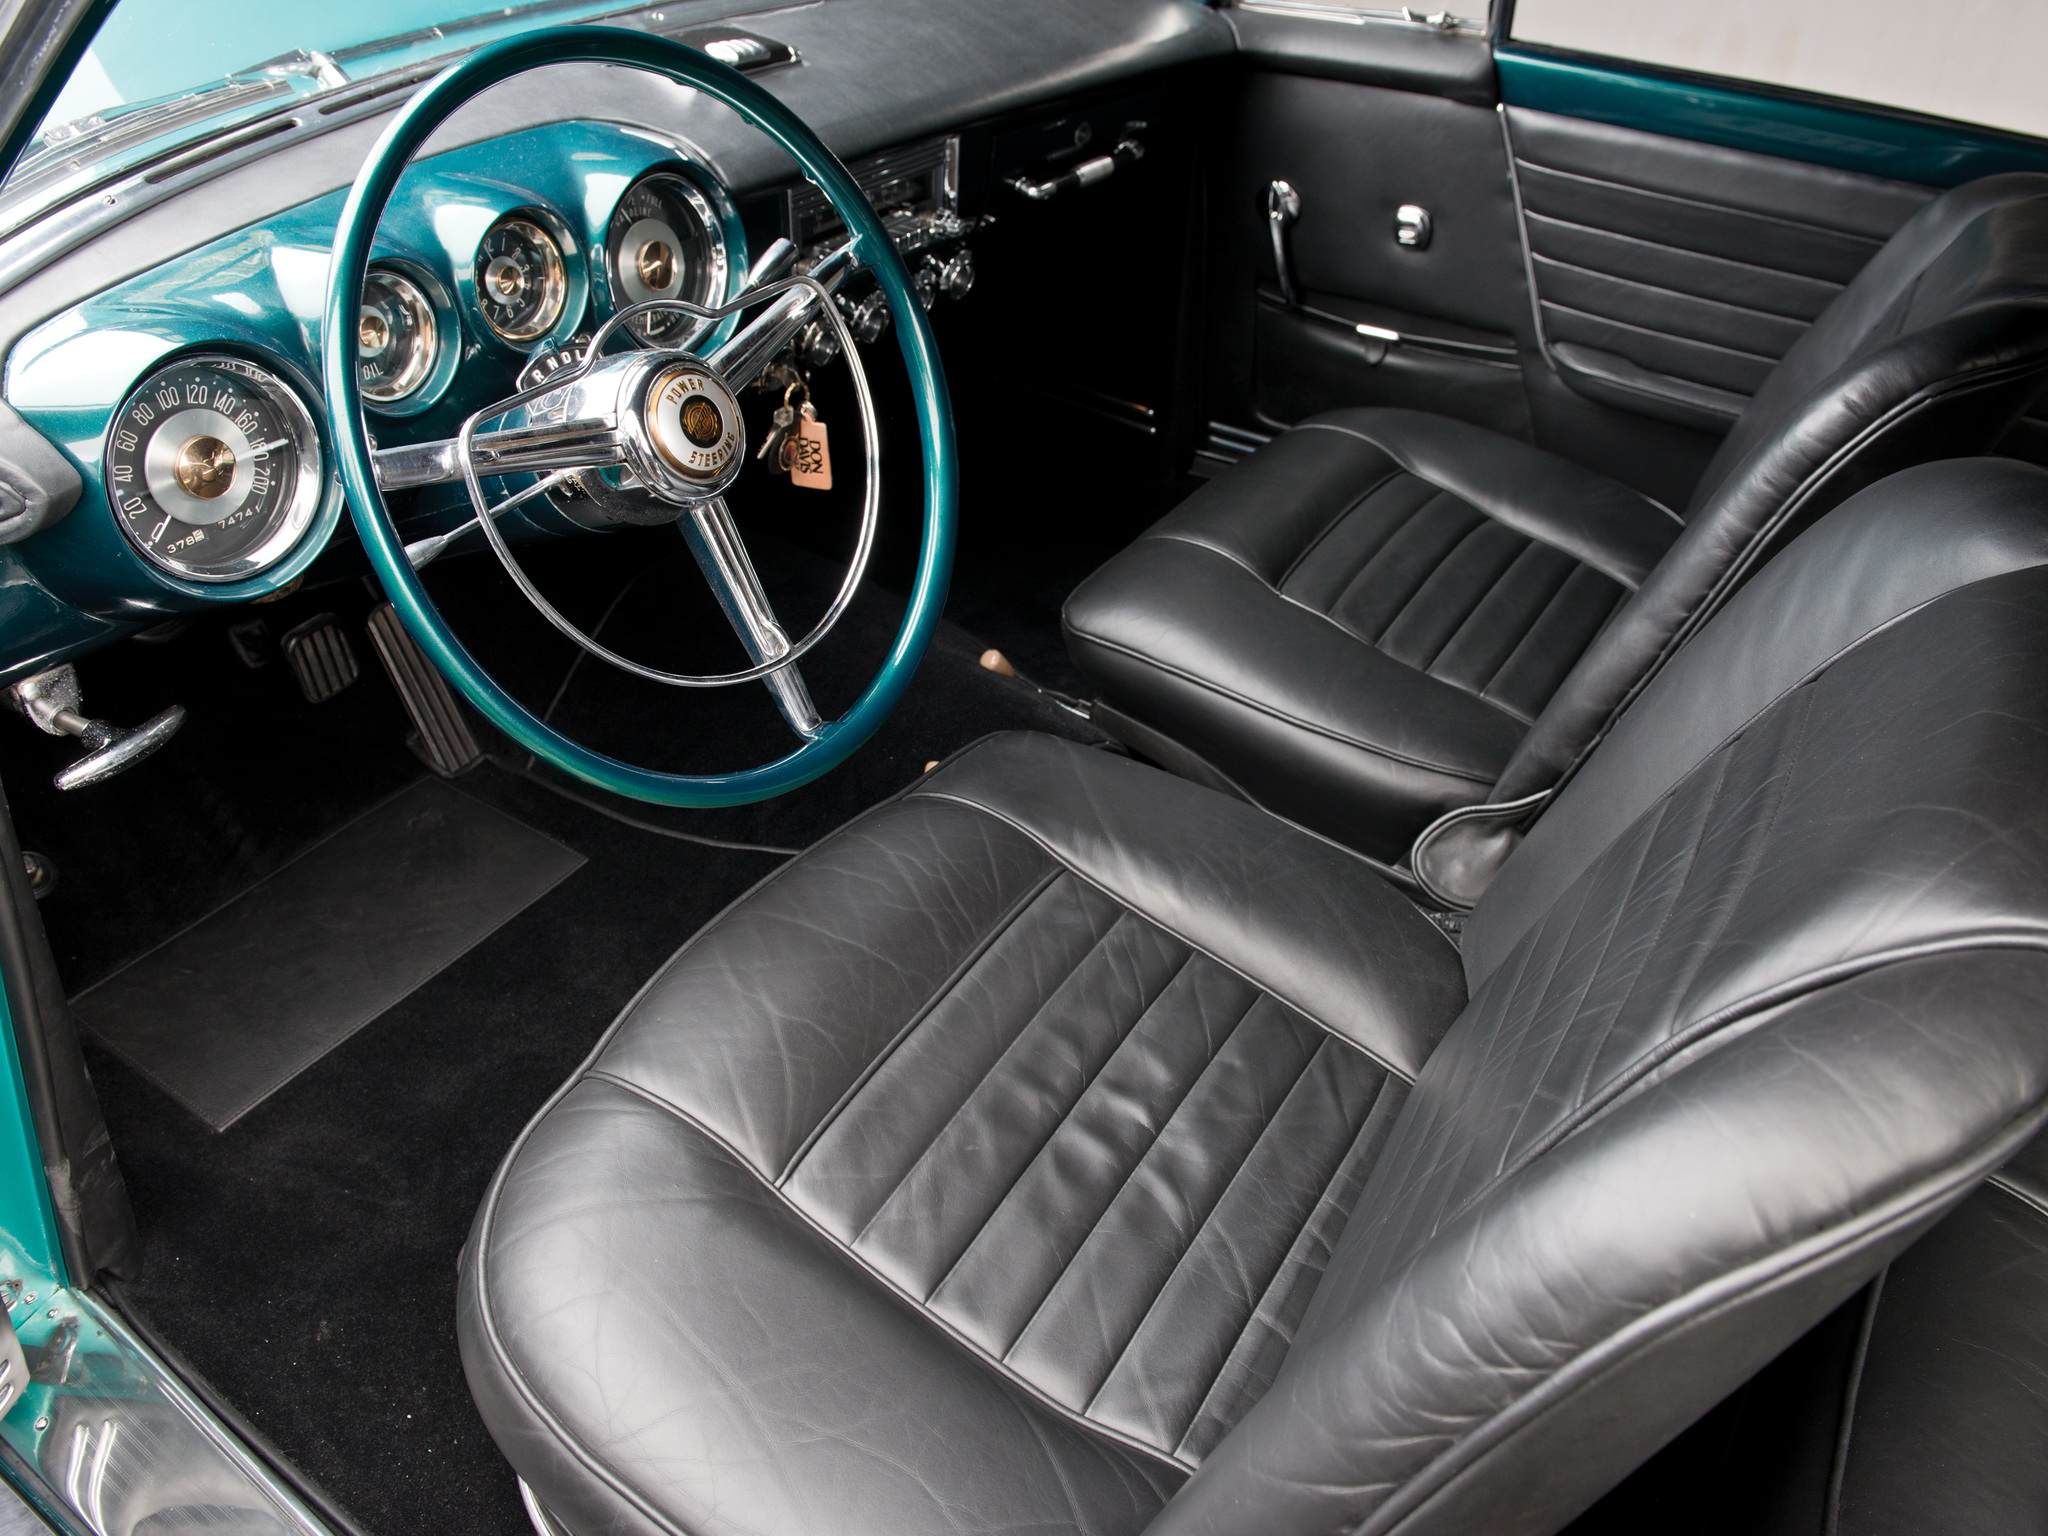 1954, Chrysler, Gs 1, Coupe, Concept, Retro, Interior Wallpaper